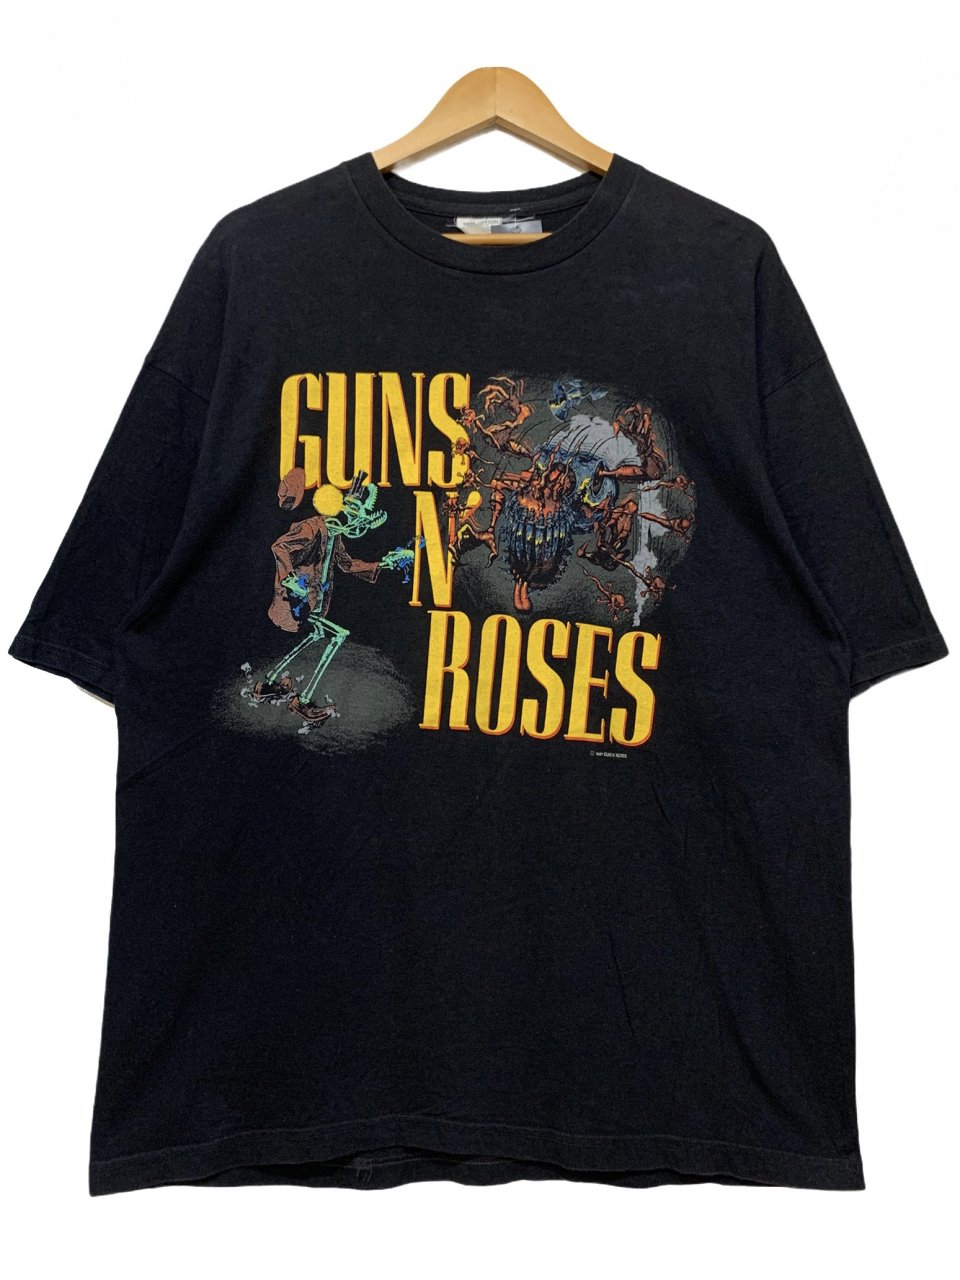 レア 希少 1991 GunsN'Roses ブロッカム社 両面 Tシャツ